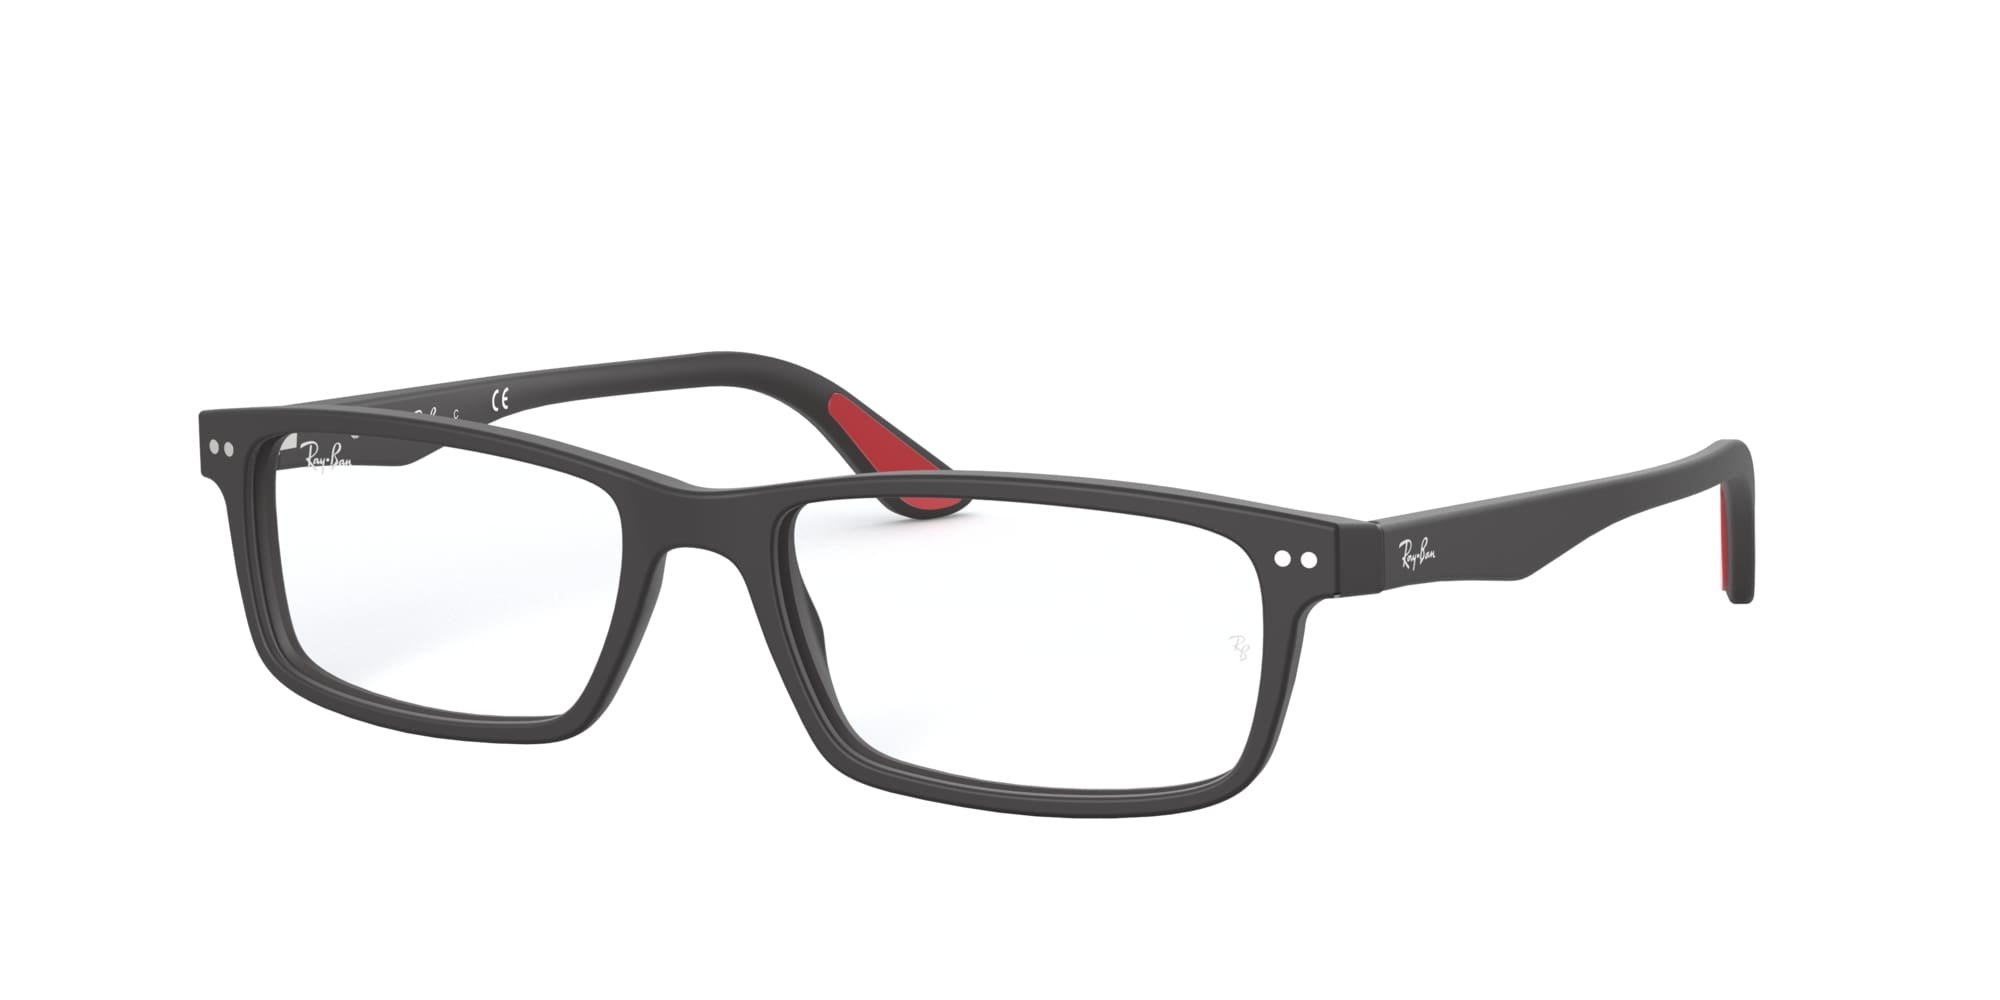 Das Bild zeigt die Korrektionsbrille RX5277 2077 von der Marke Ray Ban in schwarz.